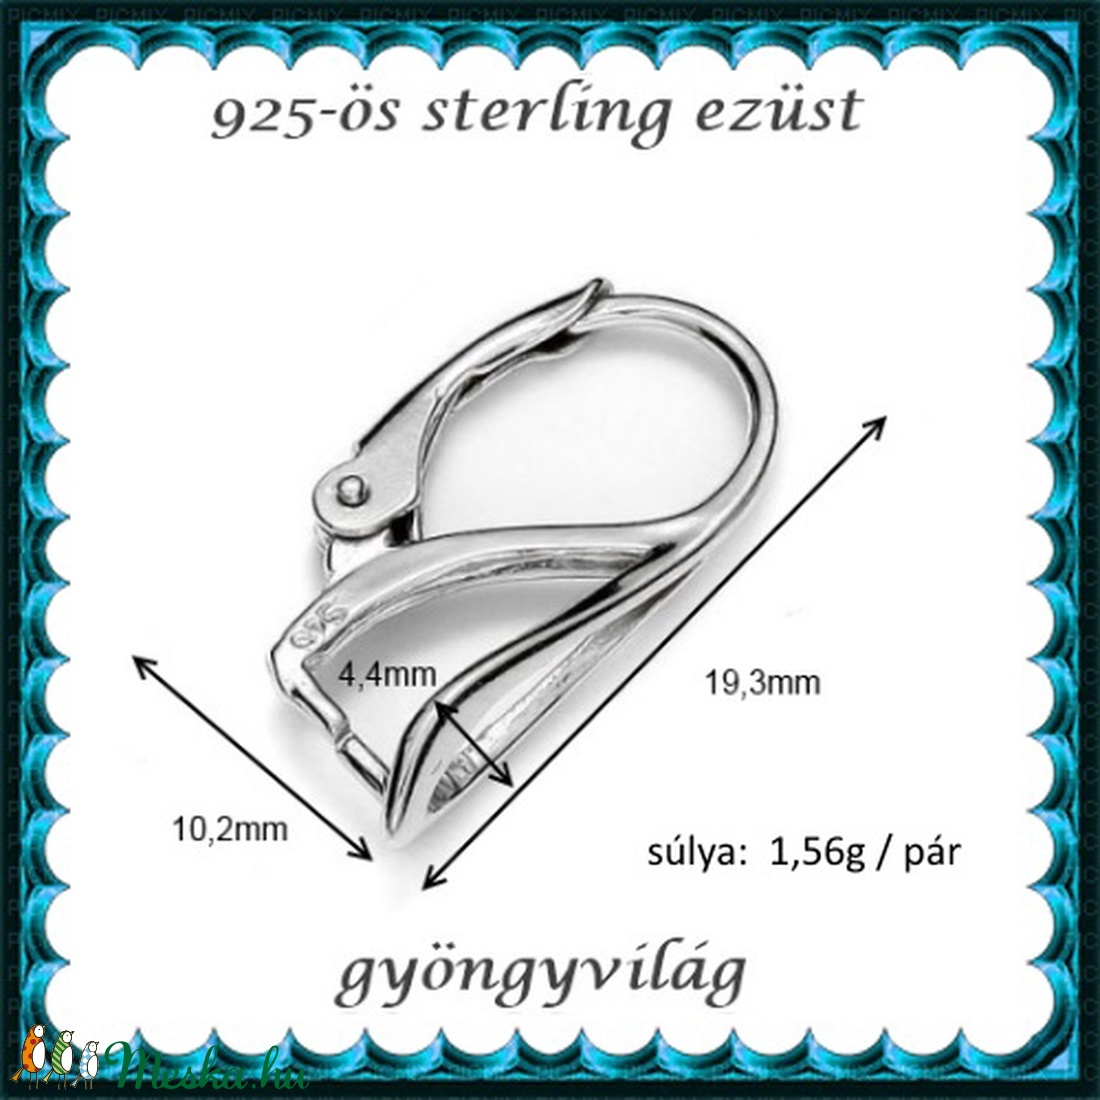  925-ös sterling ezüst ékszerkellék: fülbevalóalap biztonsági kapoccsal EFK K 16 - gyöngy, ékszerkellék - egyéb alkatrész - Meska.hu